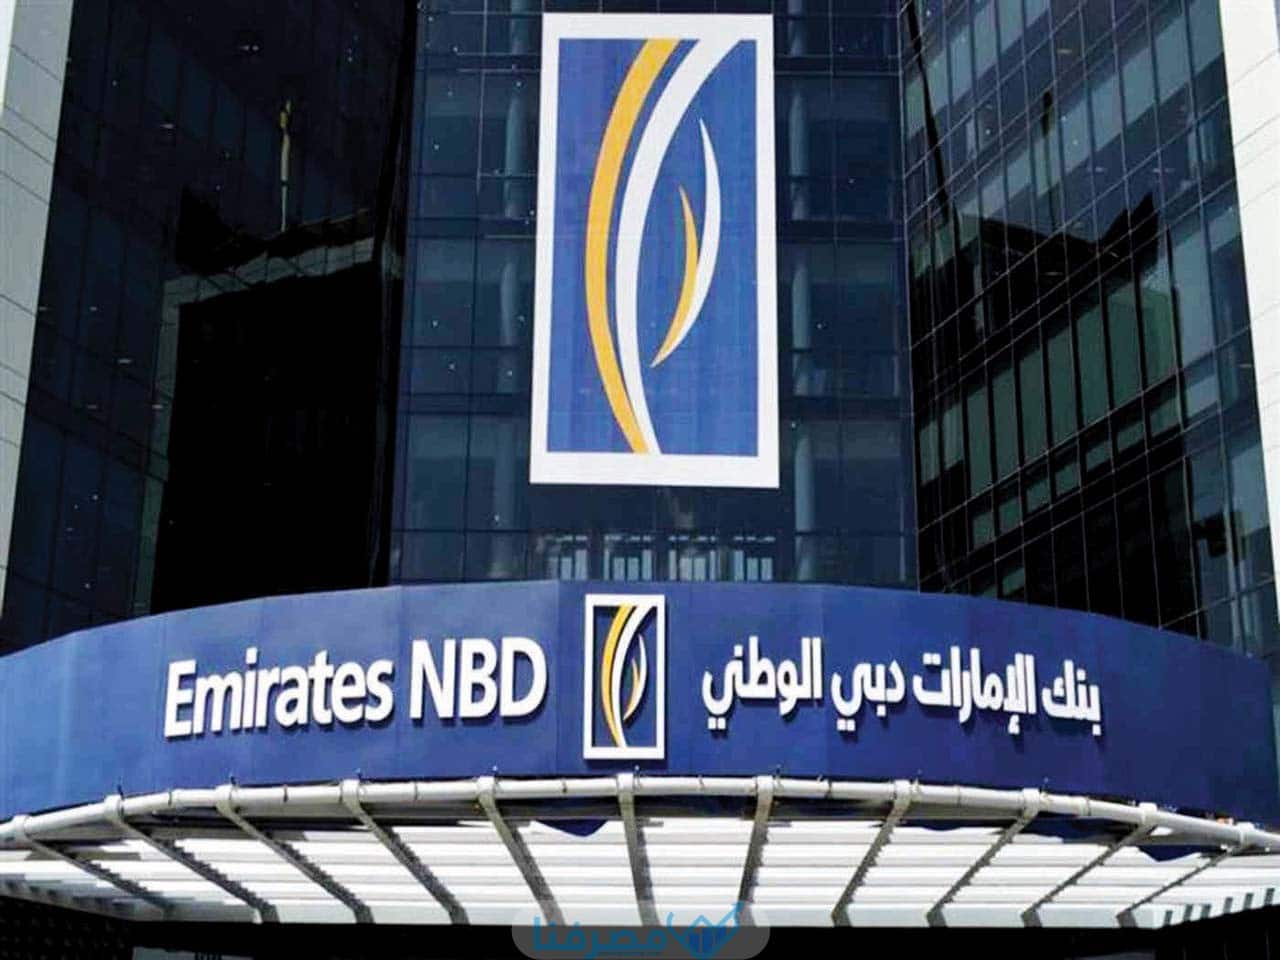 سويفت كود بنك الإمارات دبي الوطني Emirates NBD BIC/Swift Code